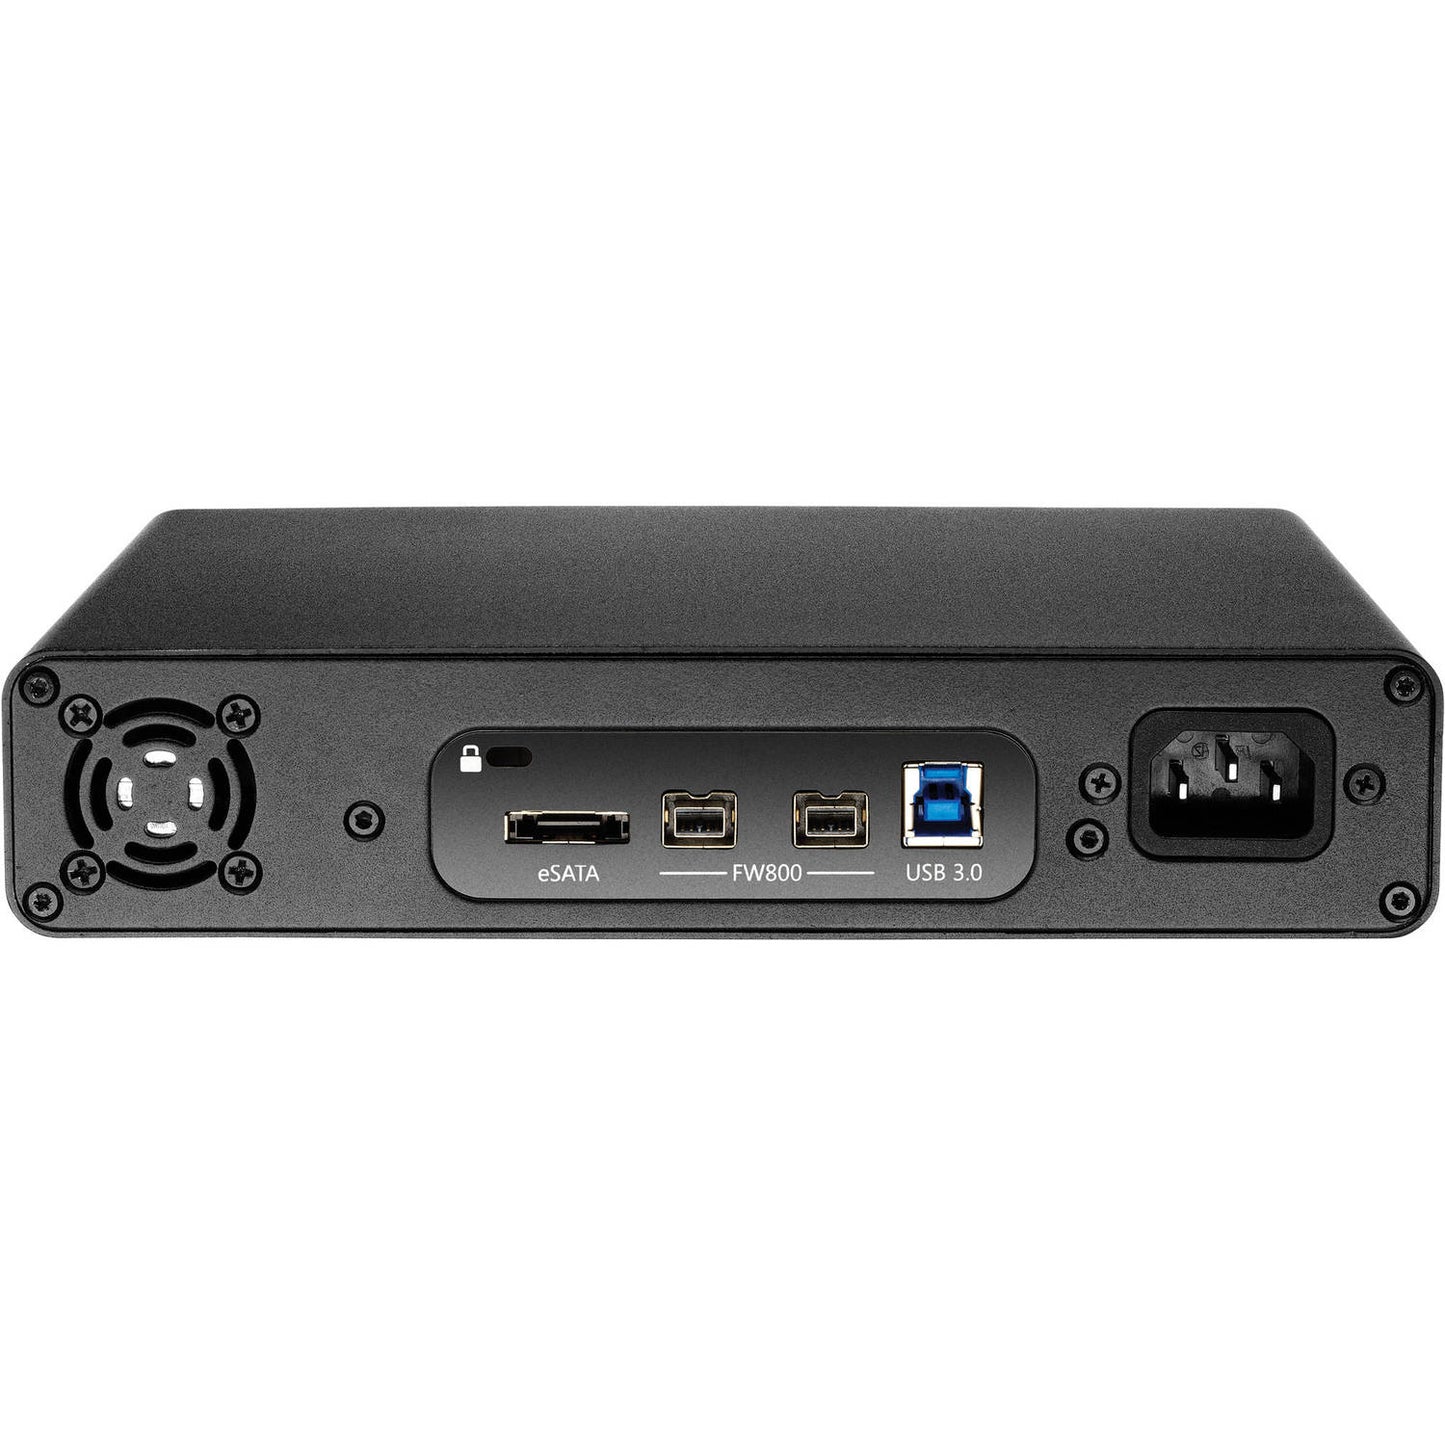 Glyph Studio 2TB USB 3.0/FireWire External Hard Drive